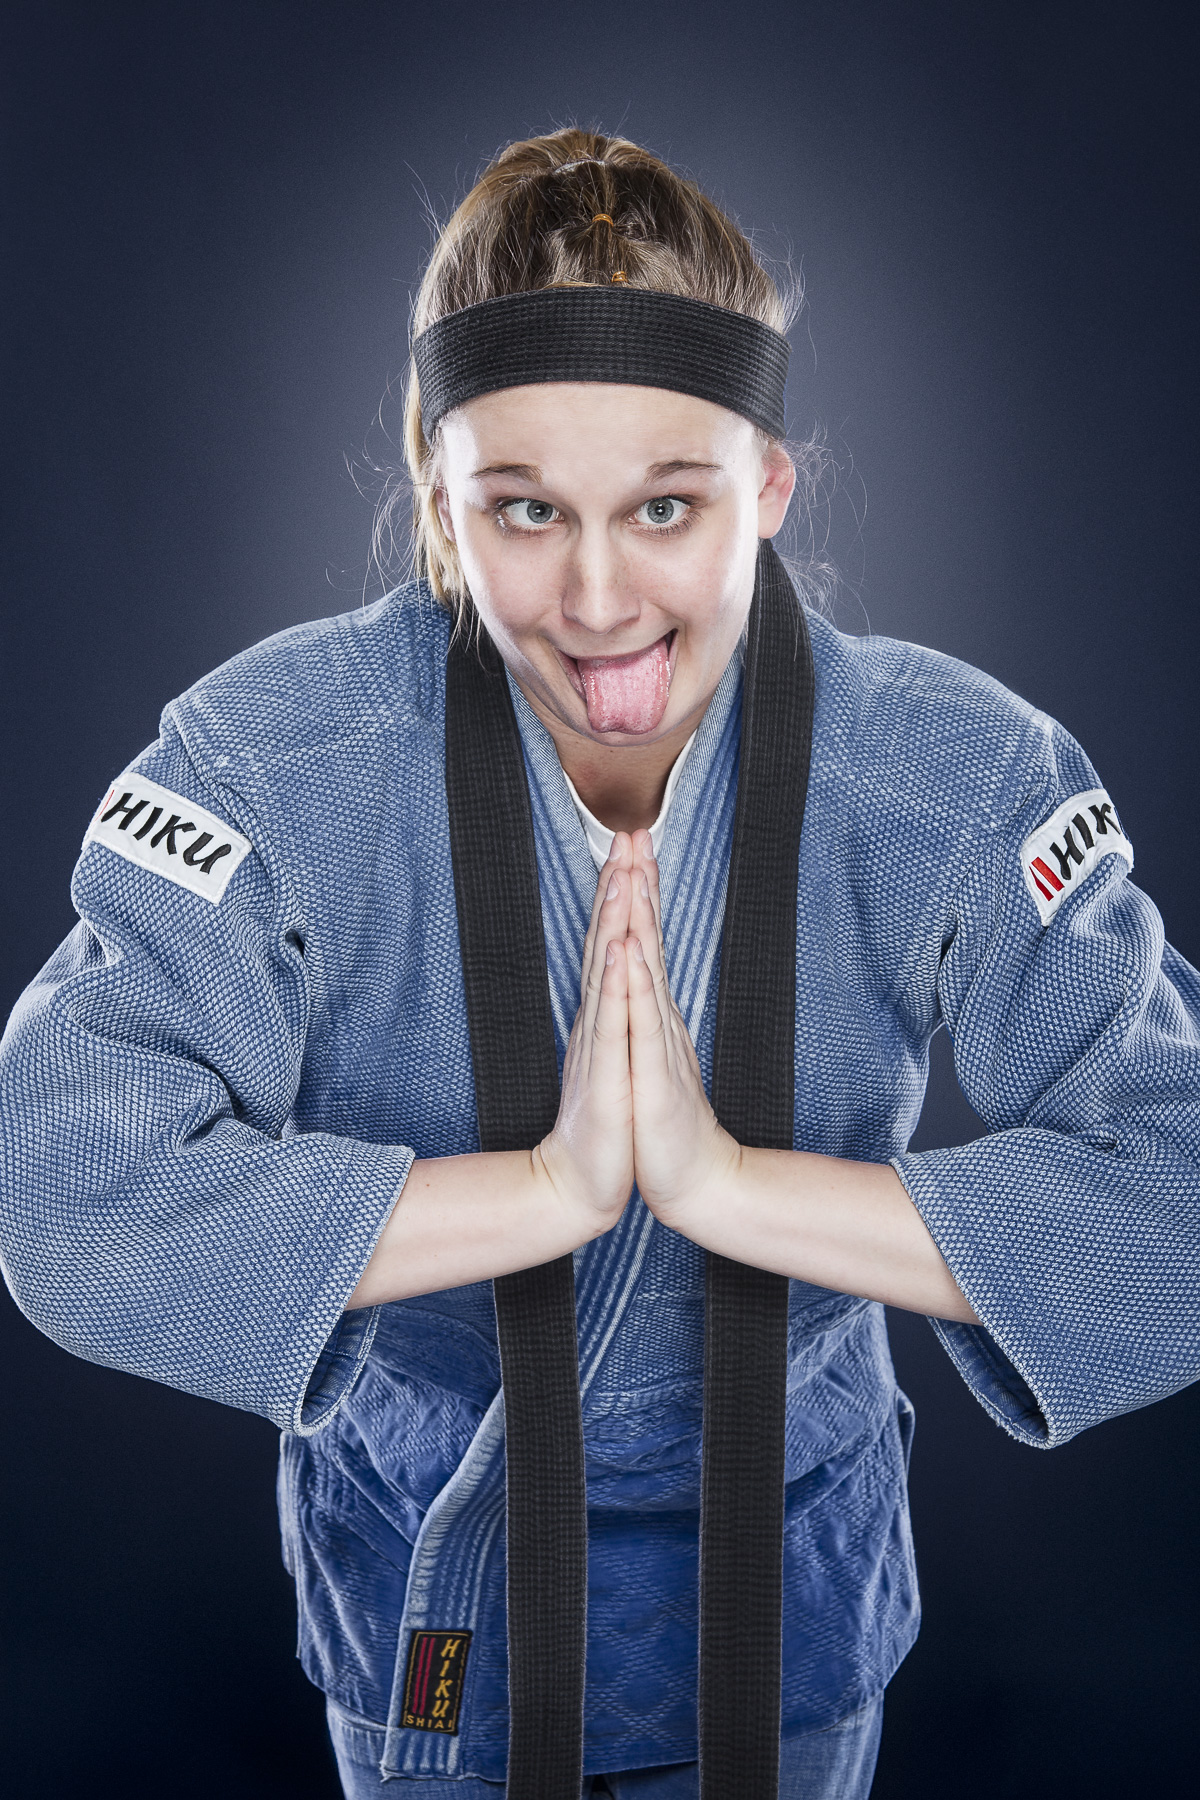 Sportrait – Real Sportsman – Judo